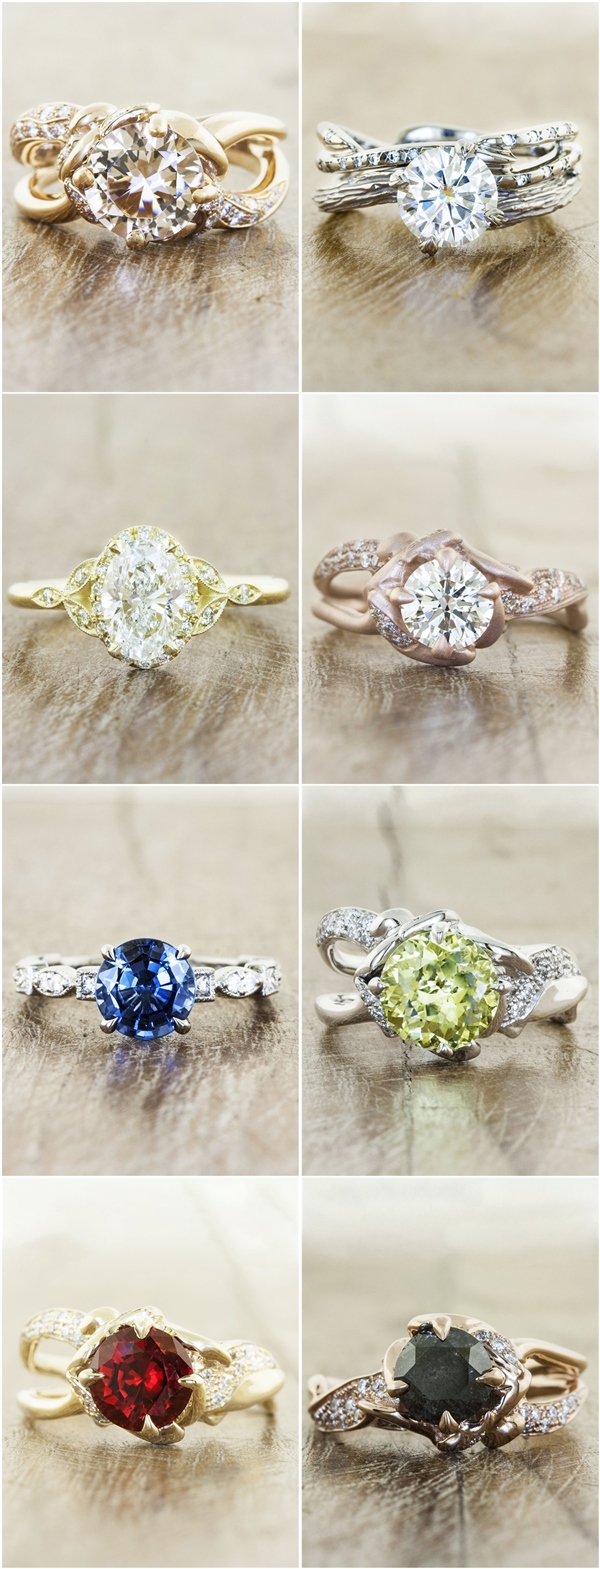 Vintage Engagement Wedding Rings for Women from Ken & Dana Design